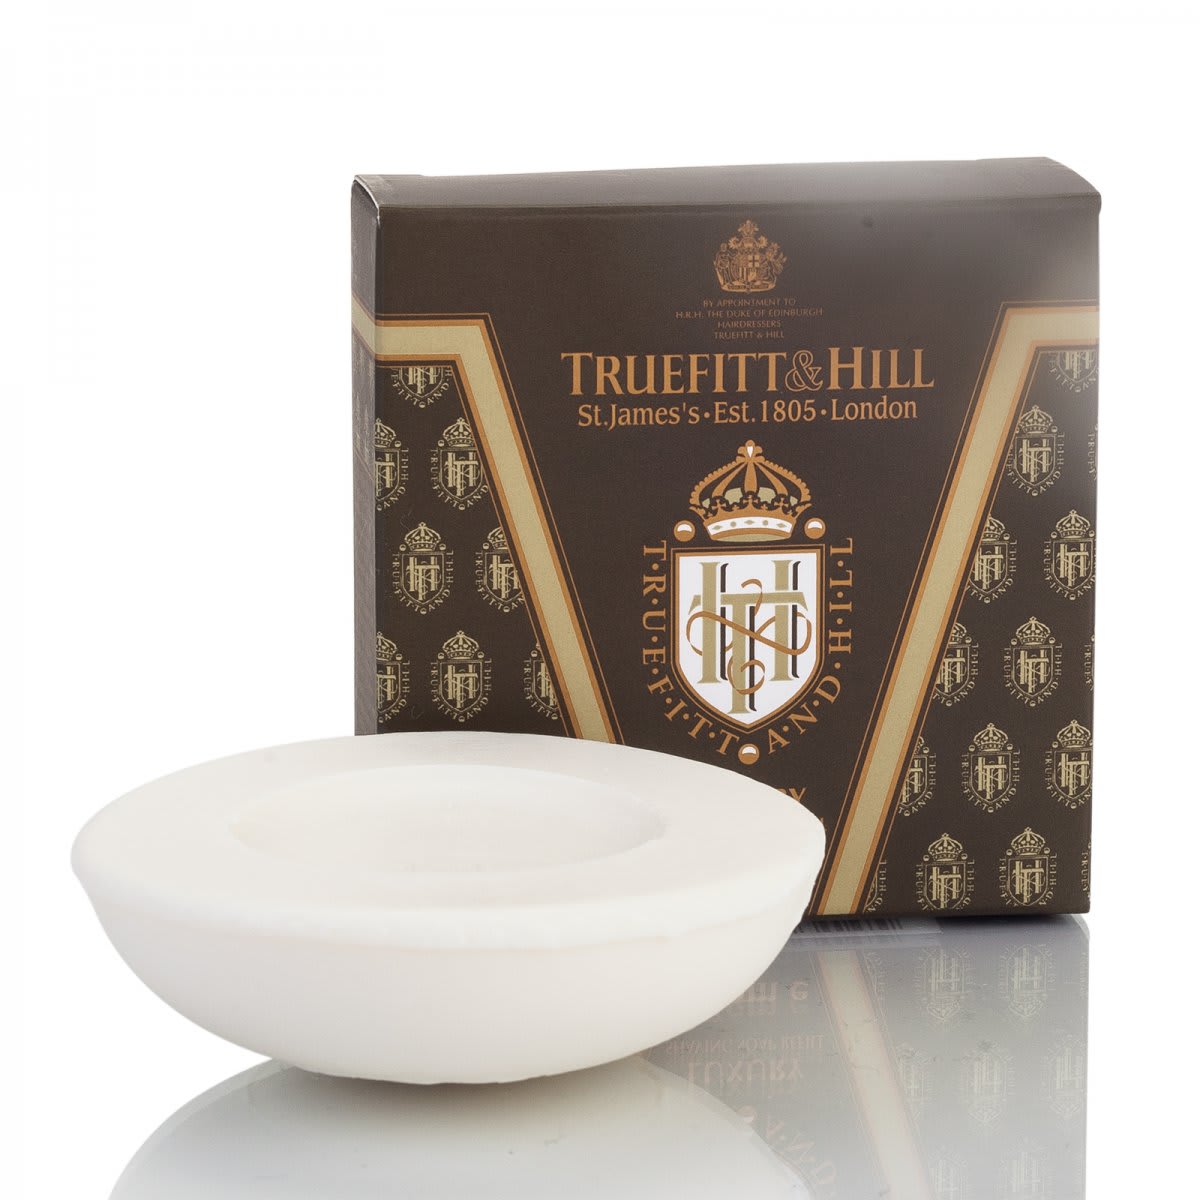 Truefitt & Hill Luxury Shaving Soap for mug